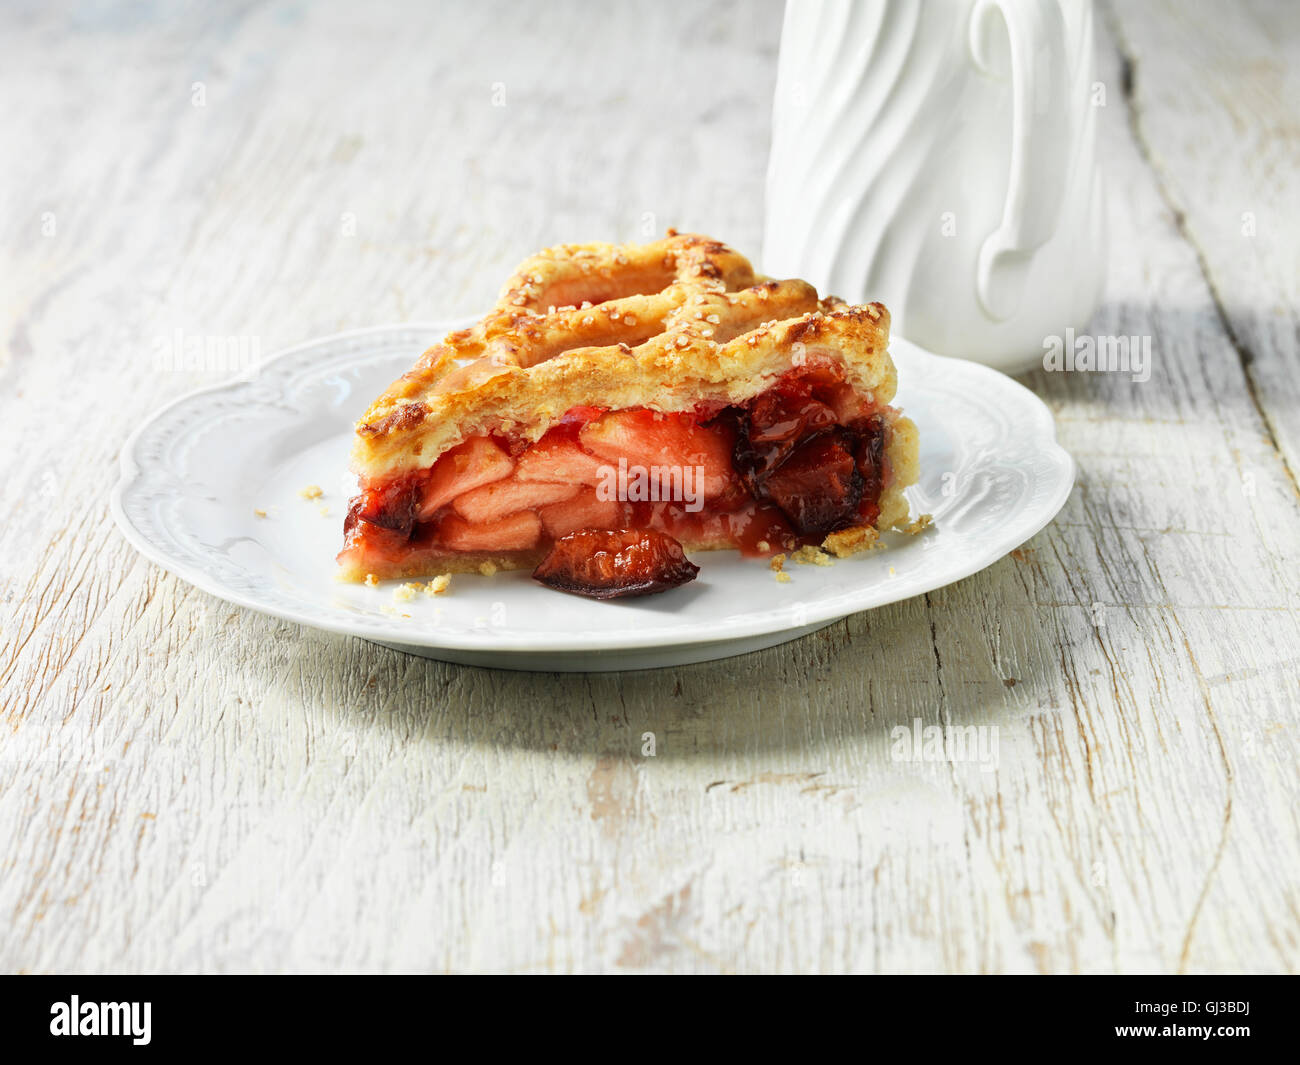 Apfel, Pflaume und Himbeere Torte auf weißen Teller, weiße Krug, weiß gewaschen Holztisch Stockfoto